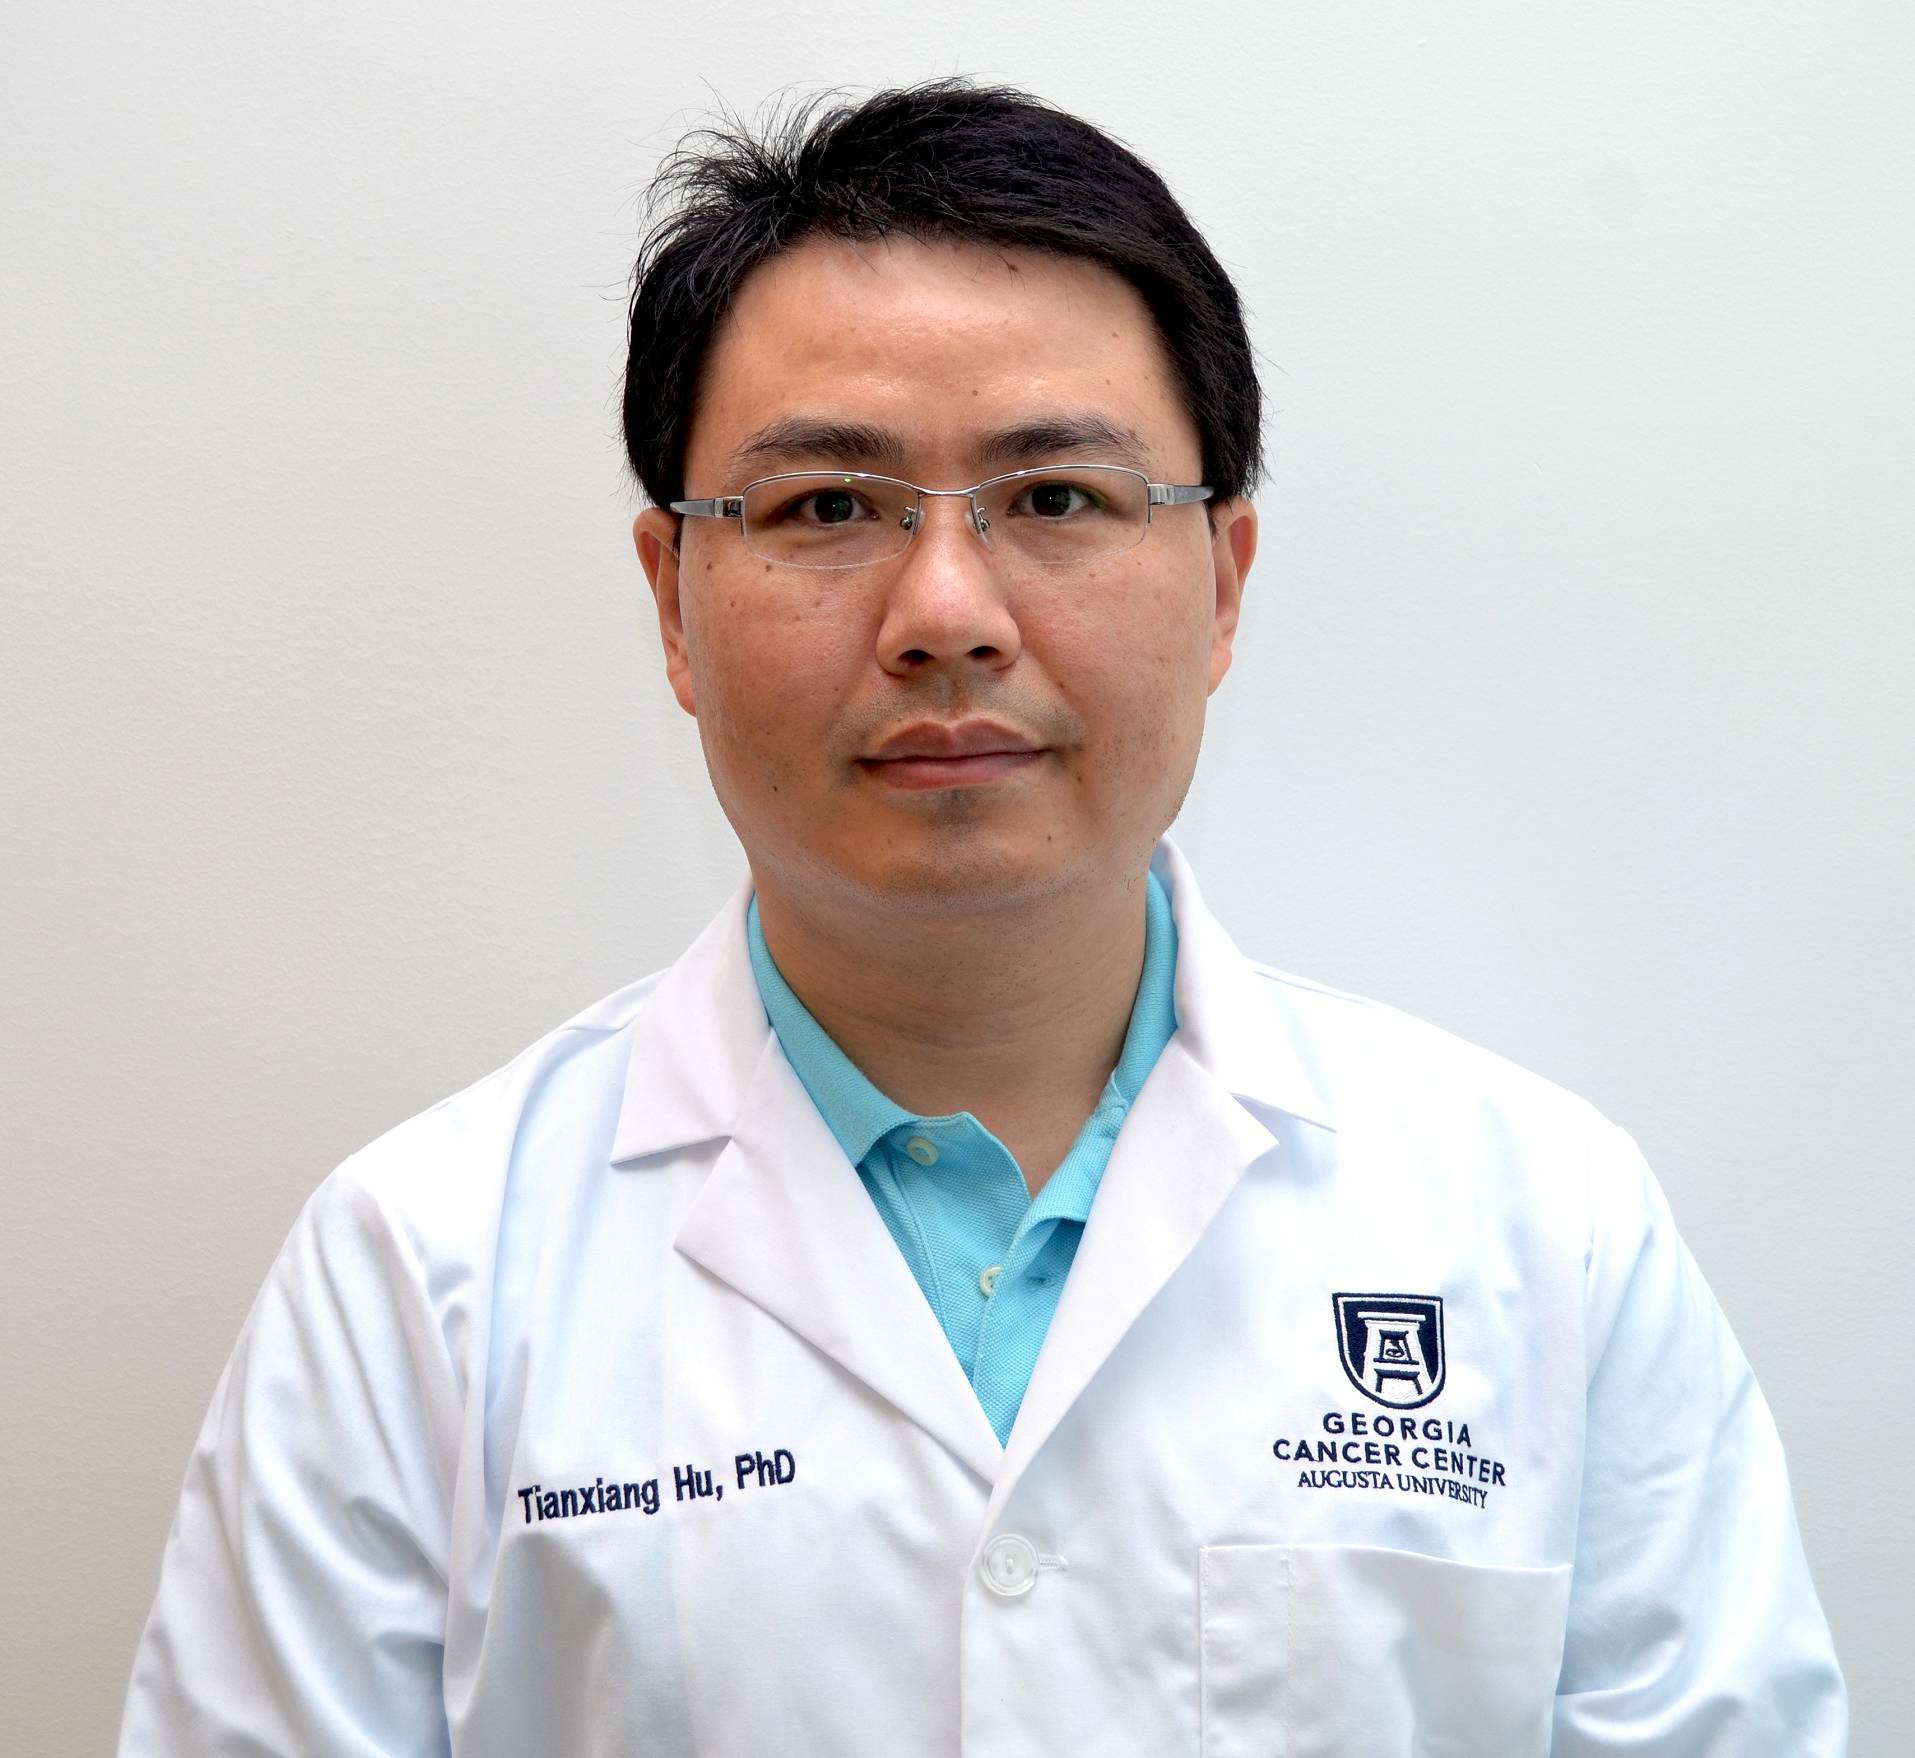 Tianxiang Hu, PhD